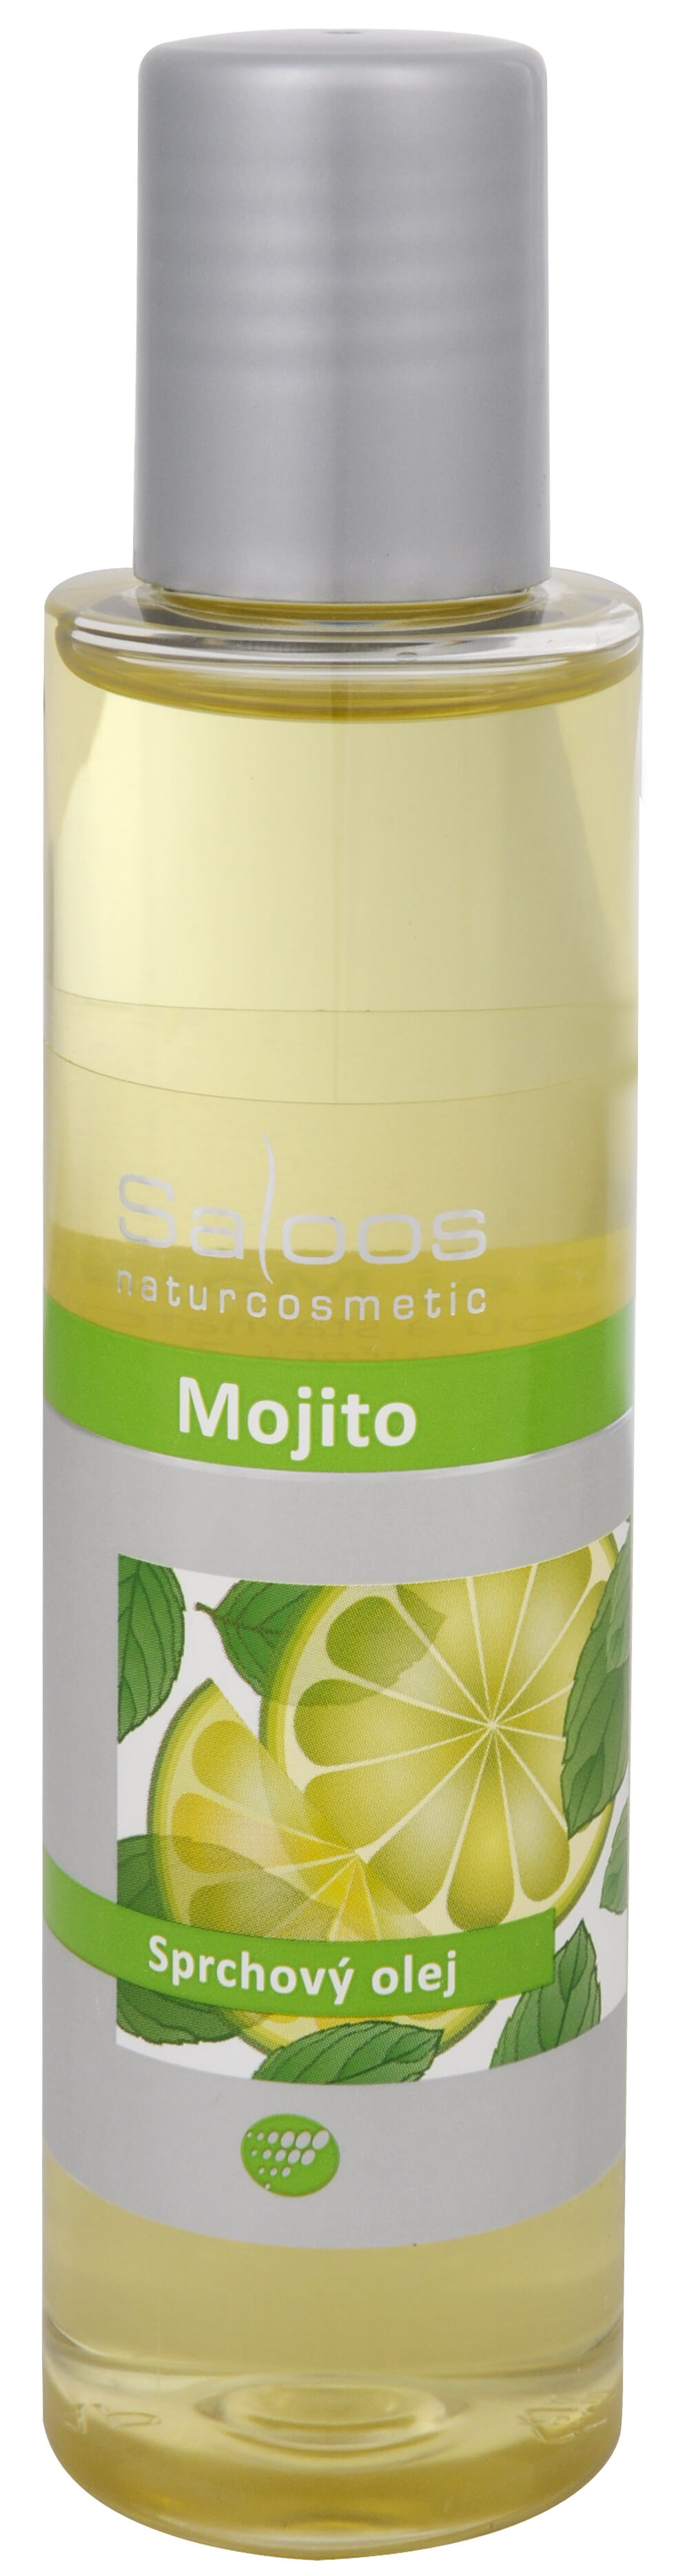 Zobrazit detail výrobku Saloos Sprchový olej - Mojito 125 ml